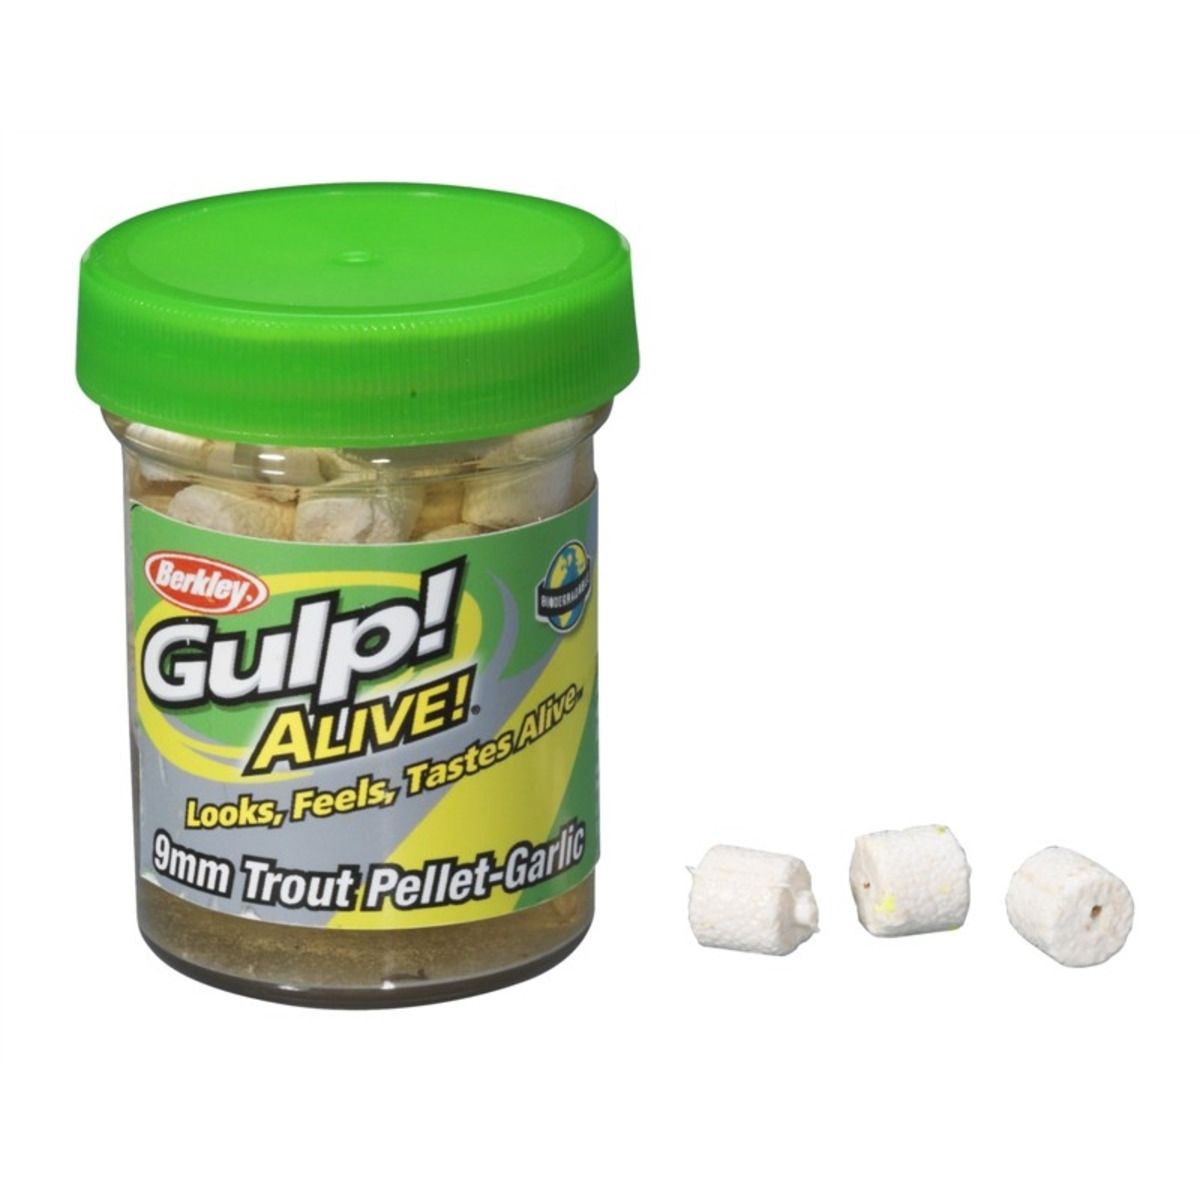 Berkley Gulp! Alive Trout Pellet - 2,1 oz – 59 g - Garlic-White